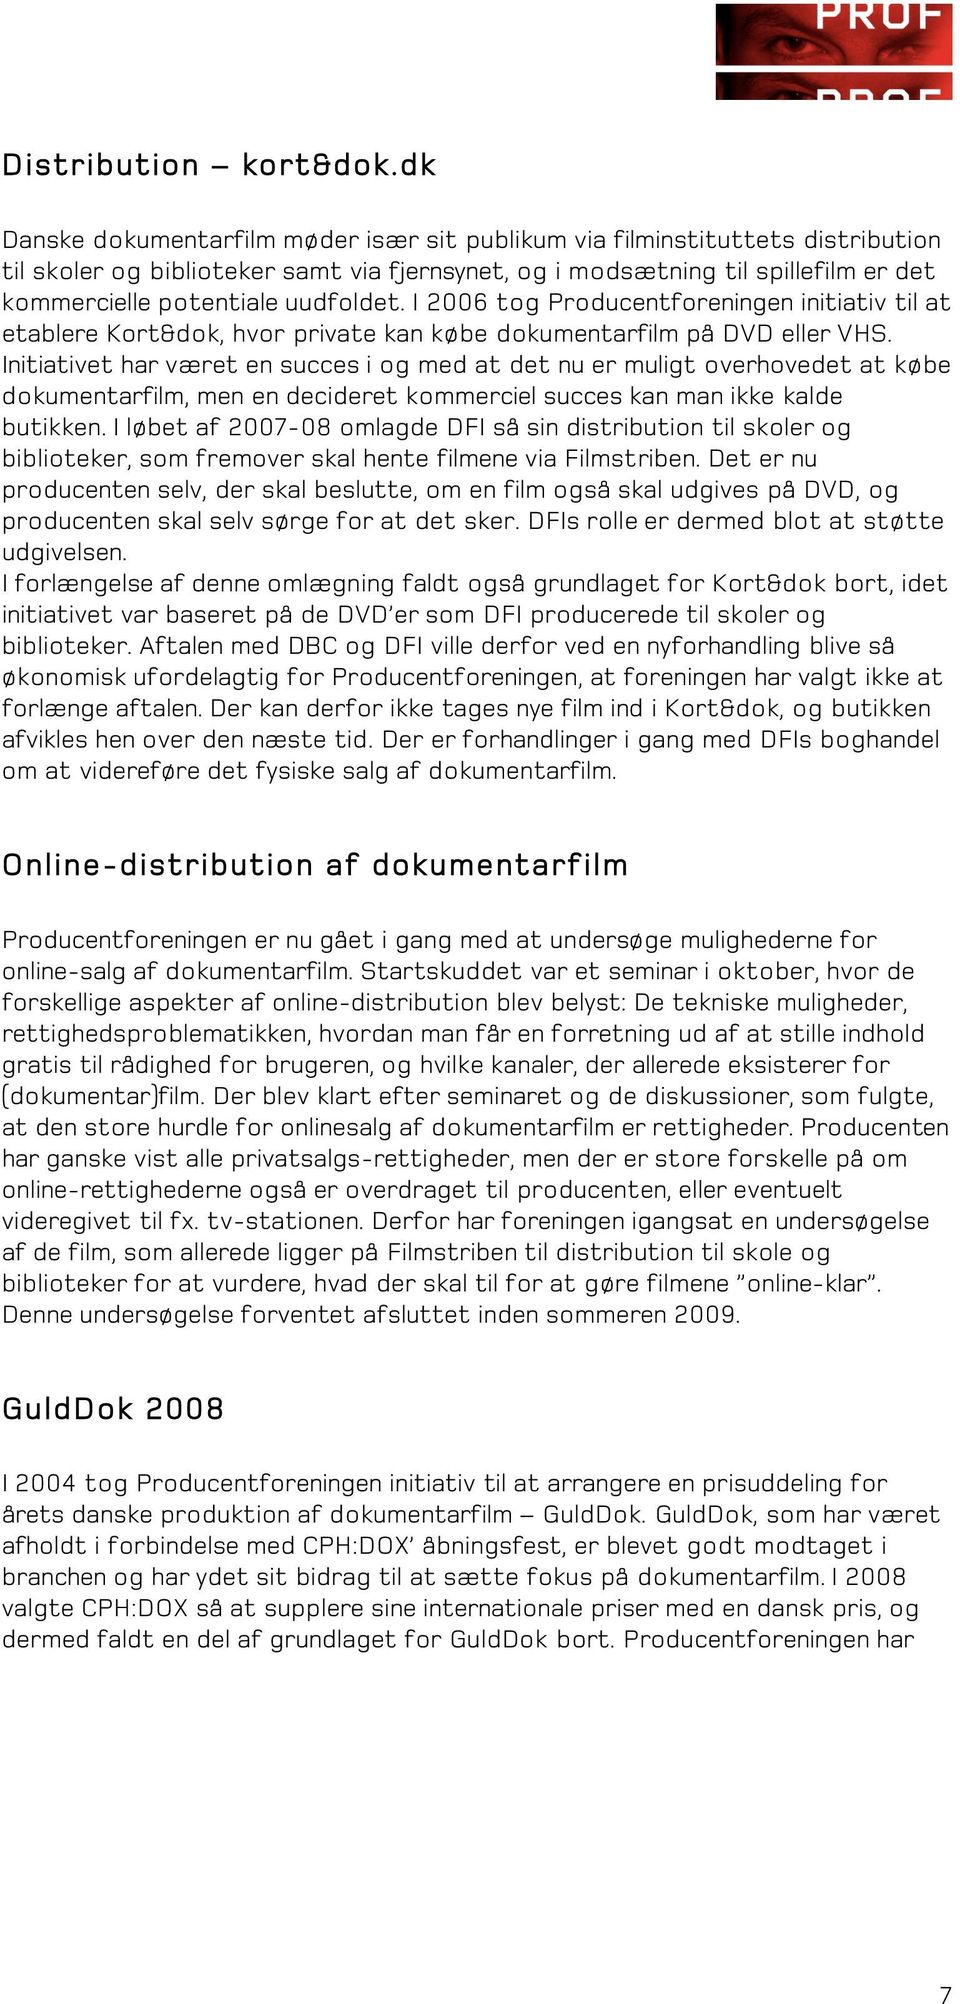 uudfoldet. I 2006 tog Producentforeningen initiativ til at etablere Kort&dok, hvor private kan købe dokumentarfilm på DVD eller VHS.